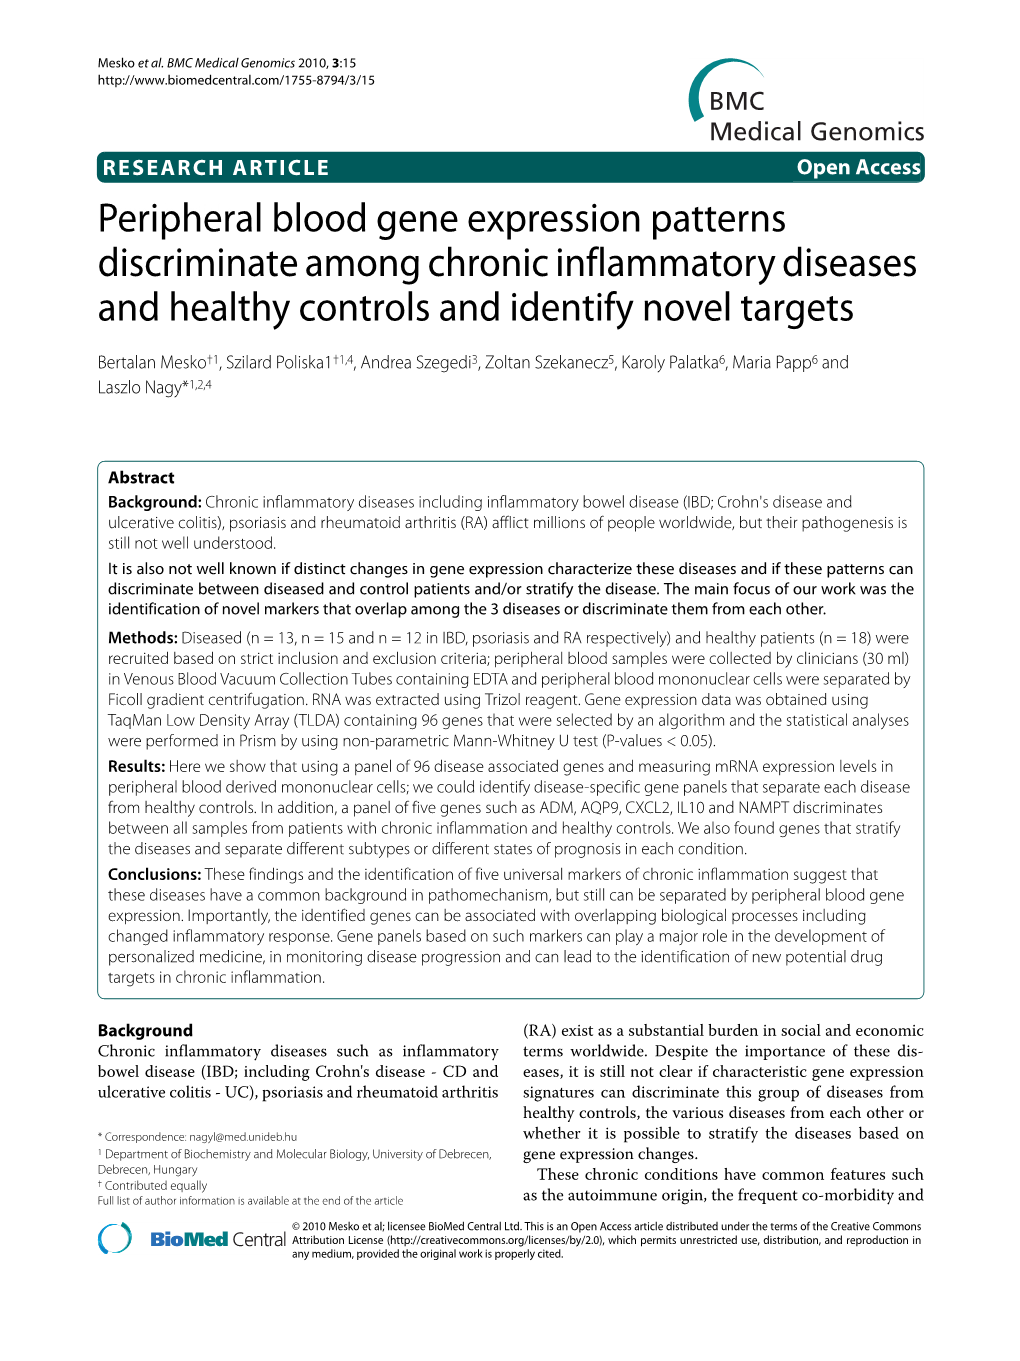 Peripheral Blood Gene Expression Patterns Discriminate Among